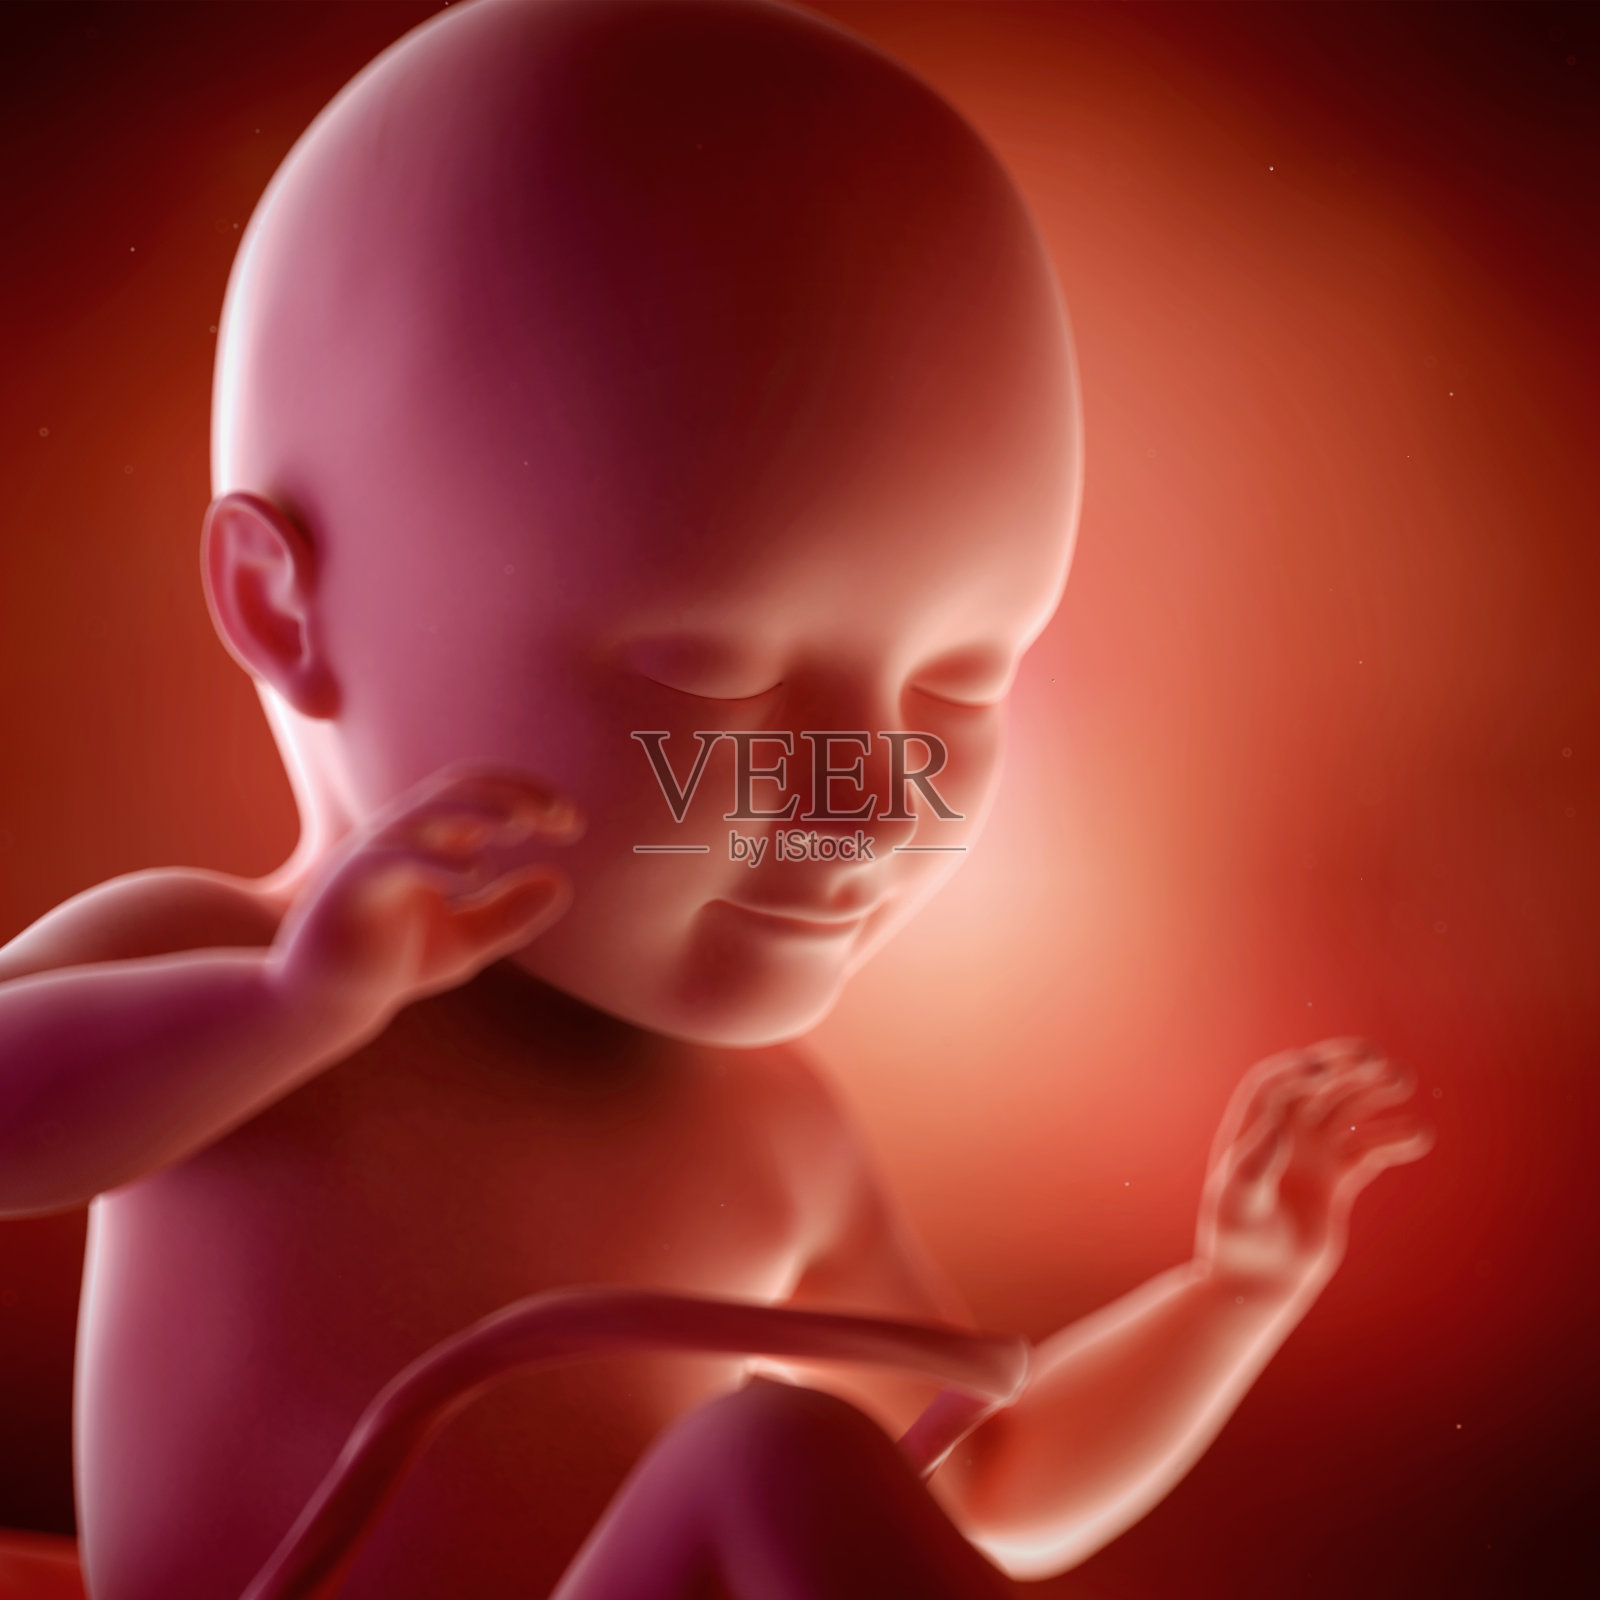 胎儿34周照片摄影图片